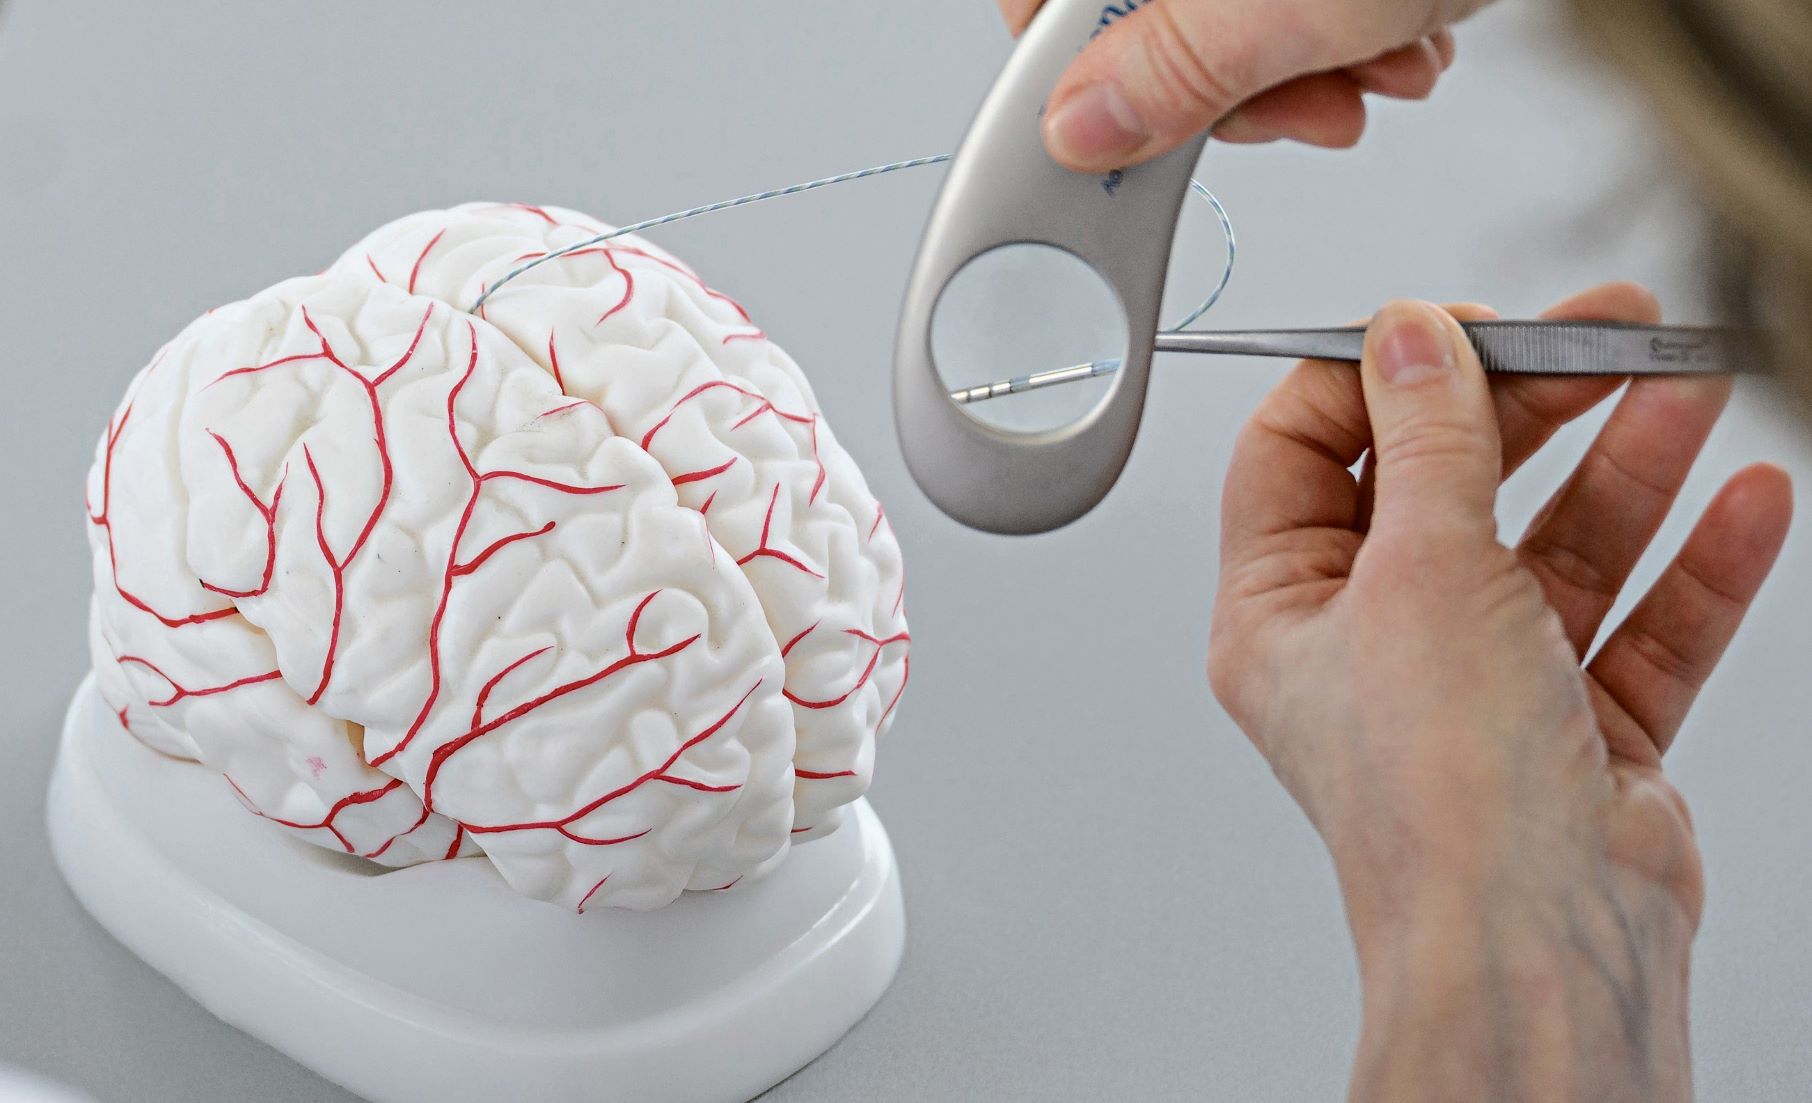 Elektrode unter einer Lupe, im Hintergrund ein Gehirn-Modell 